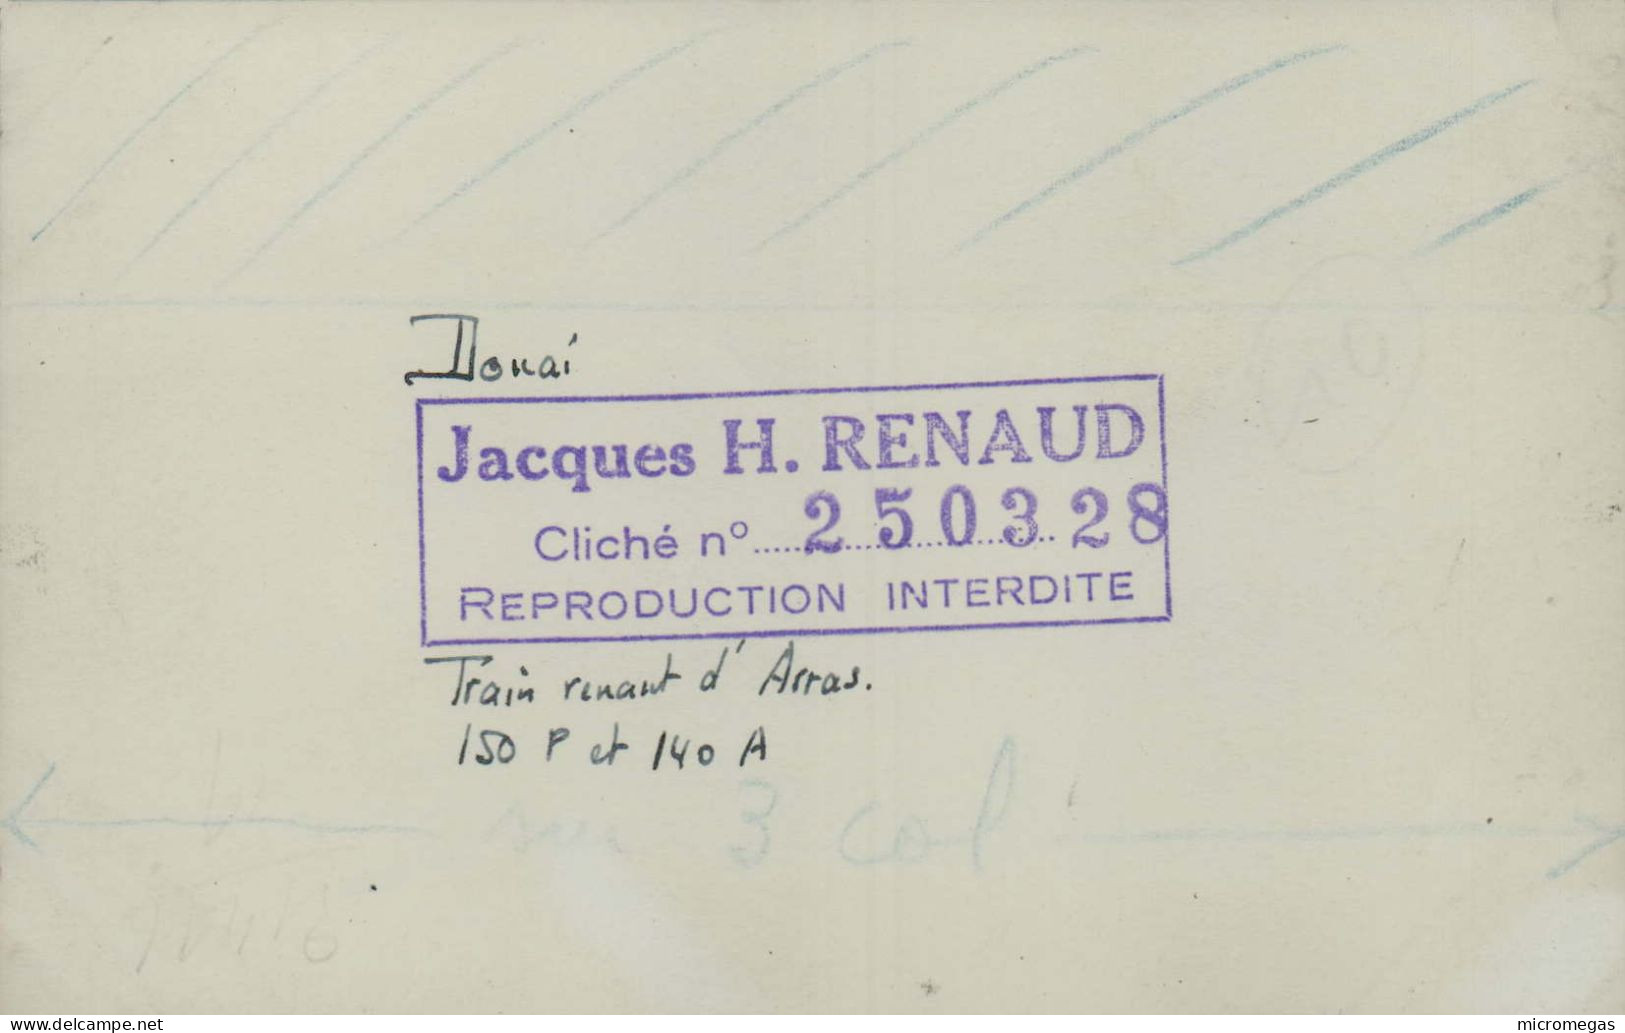 Douai - Train Venant D'Arras 150 P Et 140 A - Cliché Jacques H. Renaud - Eisenbahnen